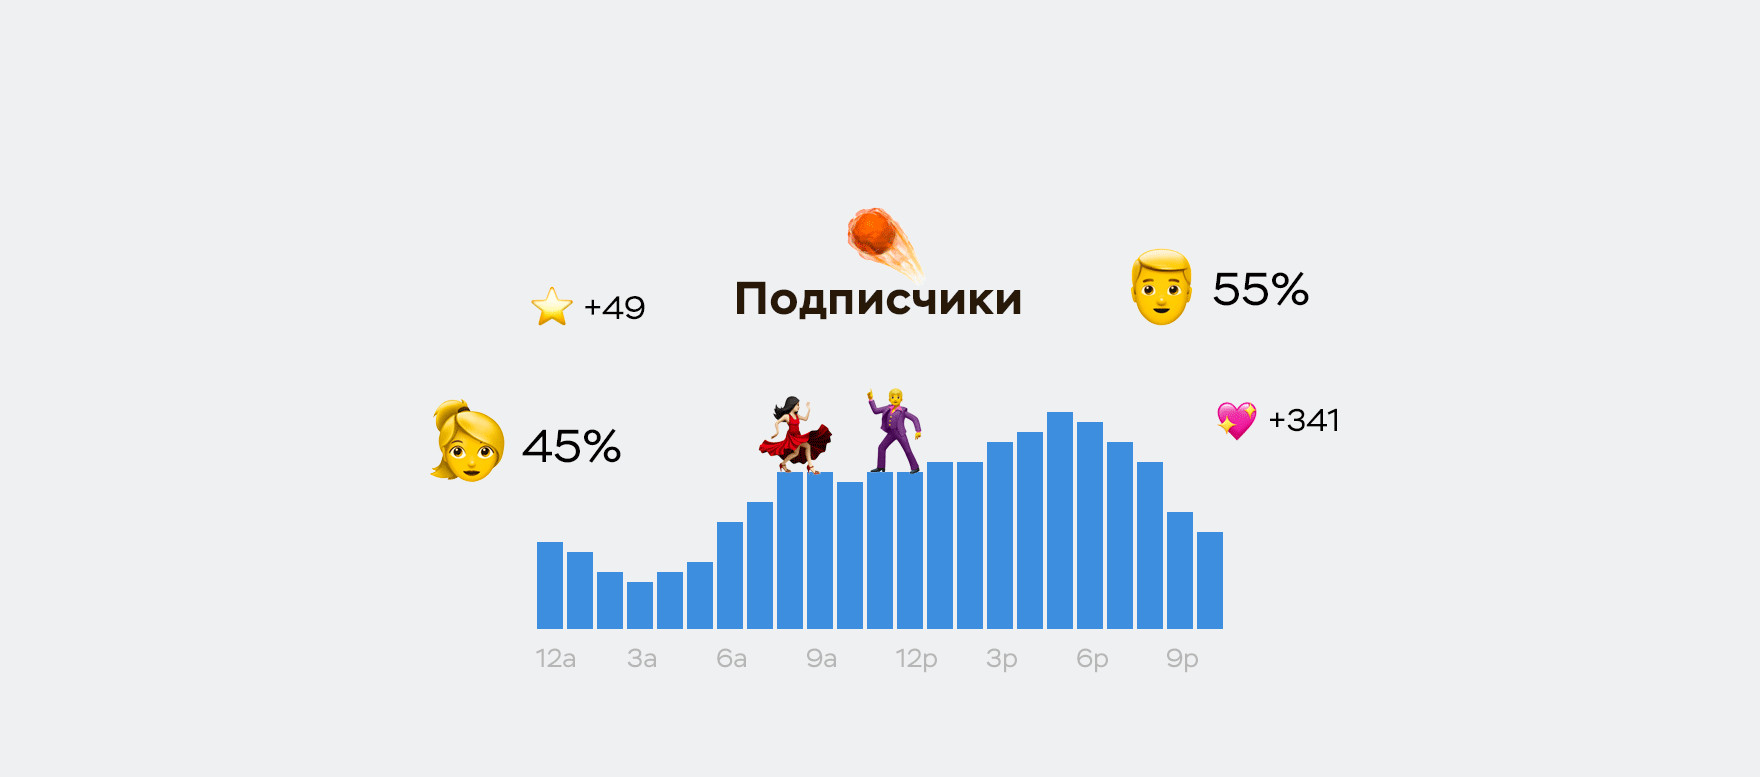 Число подписчиков вконтакте